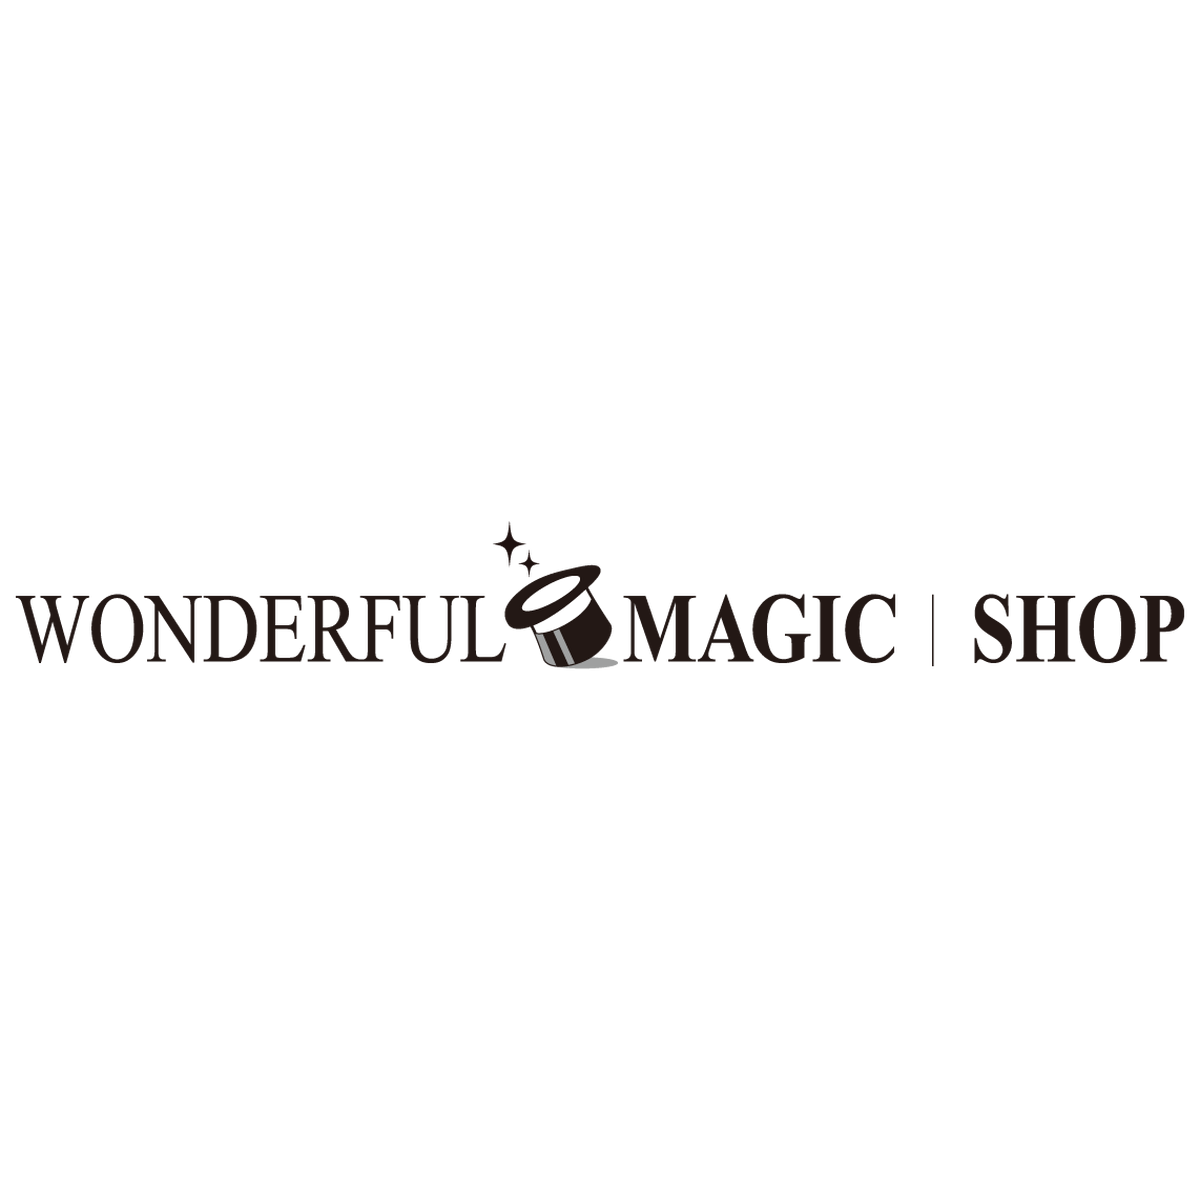 マジック 手品道具の通販 ワンダフルマジックショップ Wonderful Magic Shop